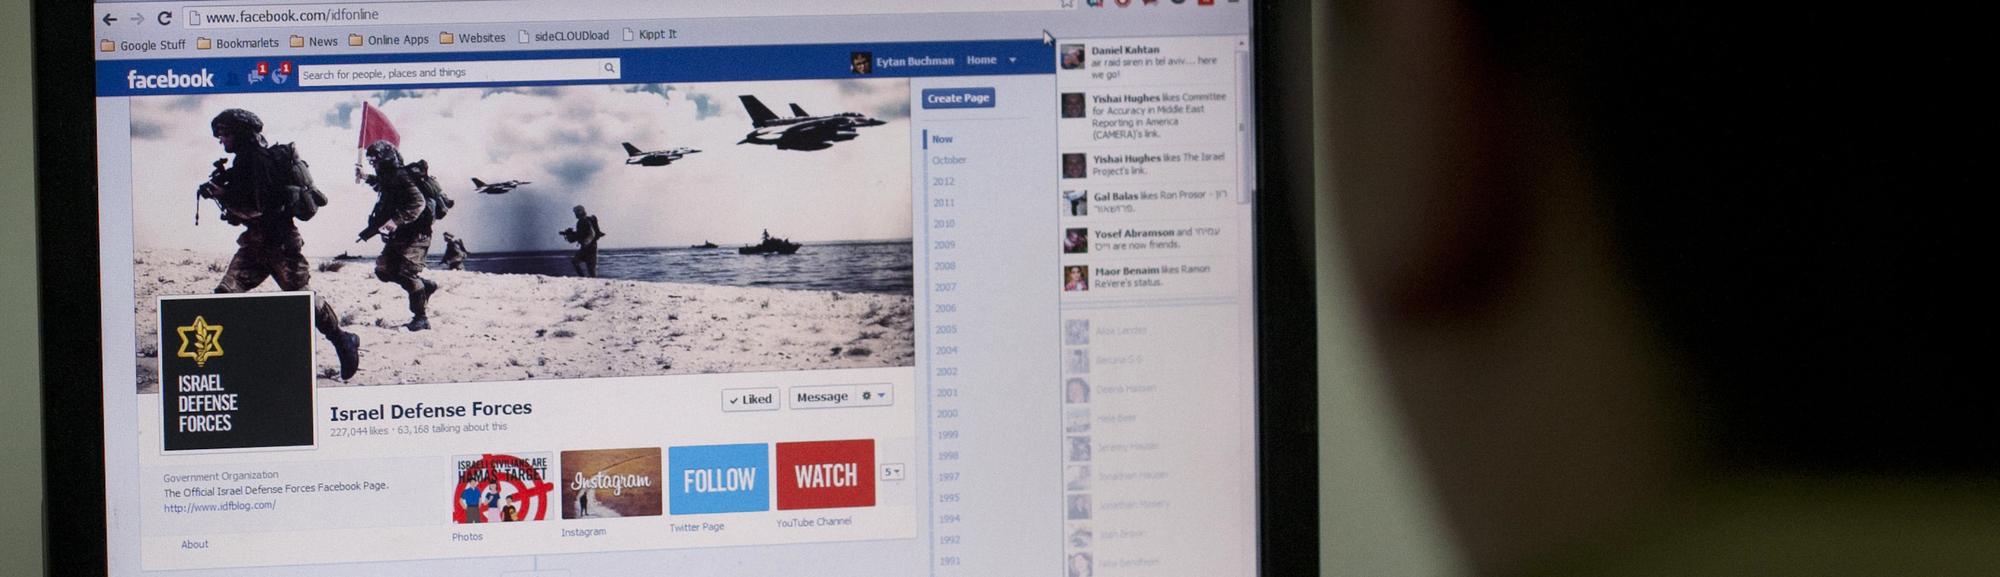  Demandan a Facebook por facilitar ataques terroristas